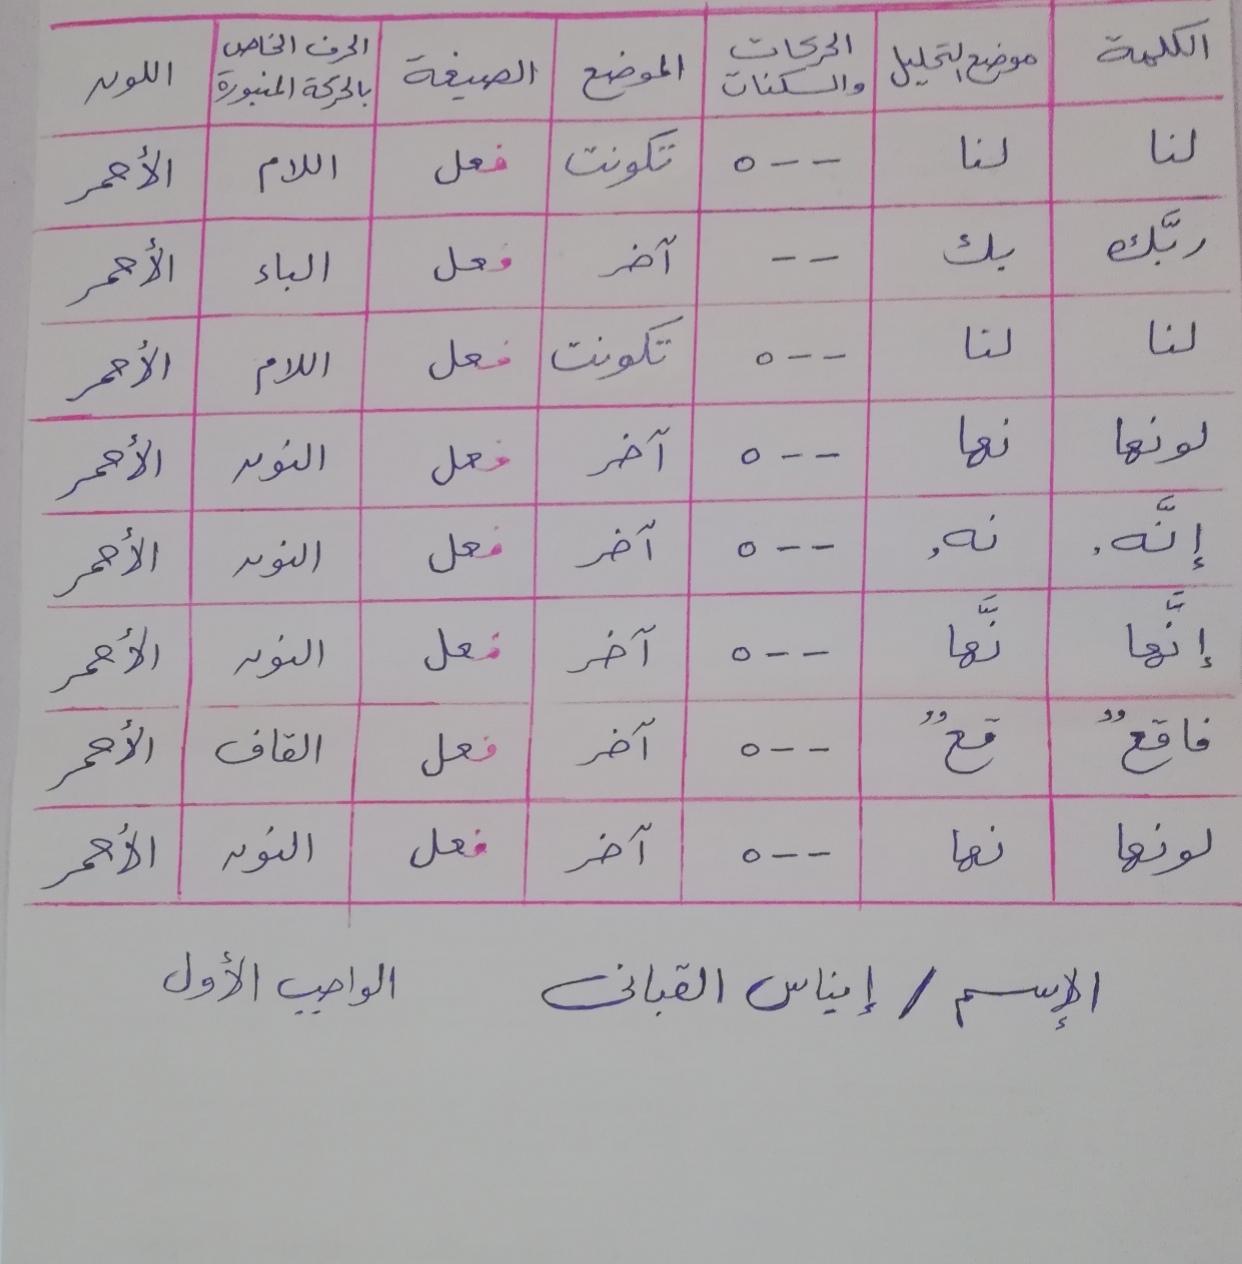 المحاضرة الثالثة للدورة6 للرجال و9 للنساء للنبر في القرآن الكريم للأستاذ الدكتور وليد مقبل الديب - صفحة 3 622332315